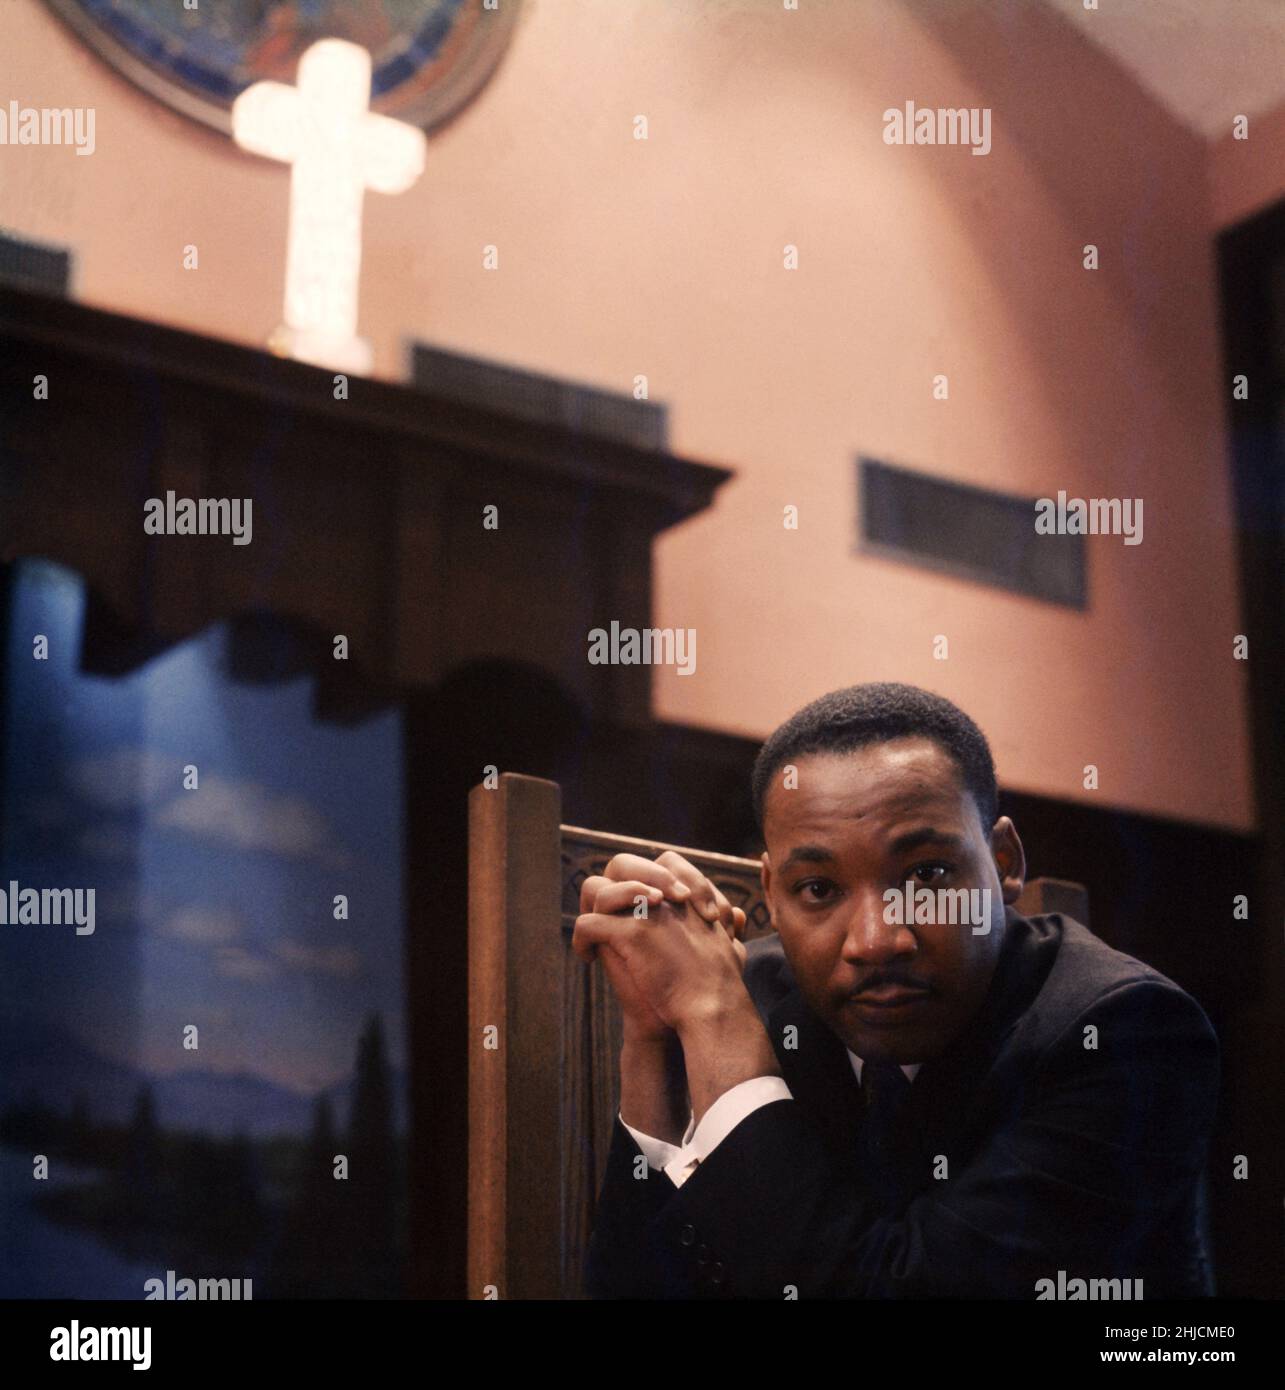 Martin Luther King, Jr. Dans une église à Atlanta, Géorgie, 1968.Martin Luther King, Jr. (15 janvier 1929 ‚Äì 4 avril 1968) est un ecclésiaste américain, militant et dirigeant éminent du mouvement des droits civils.Il a été assassiné le 4 avril 1968 à Memphis, Tennessee. Banque D'Images